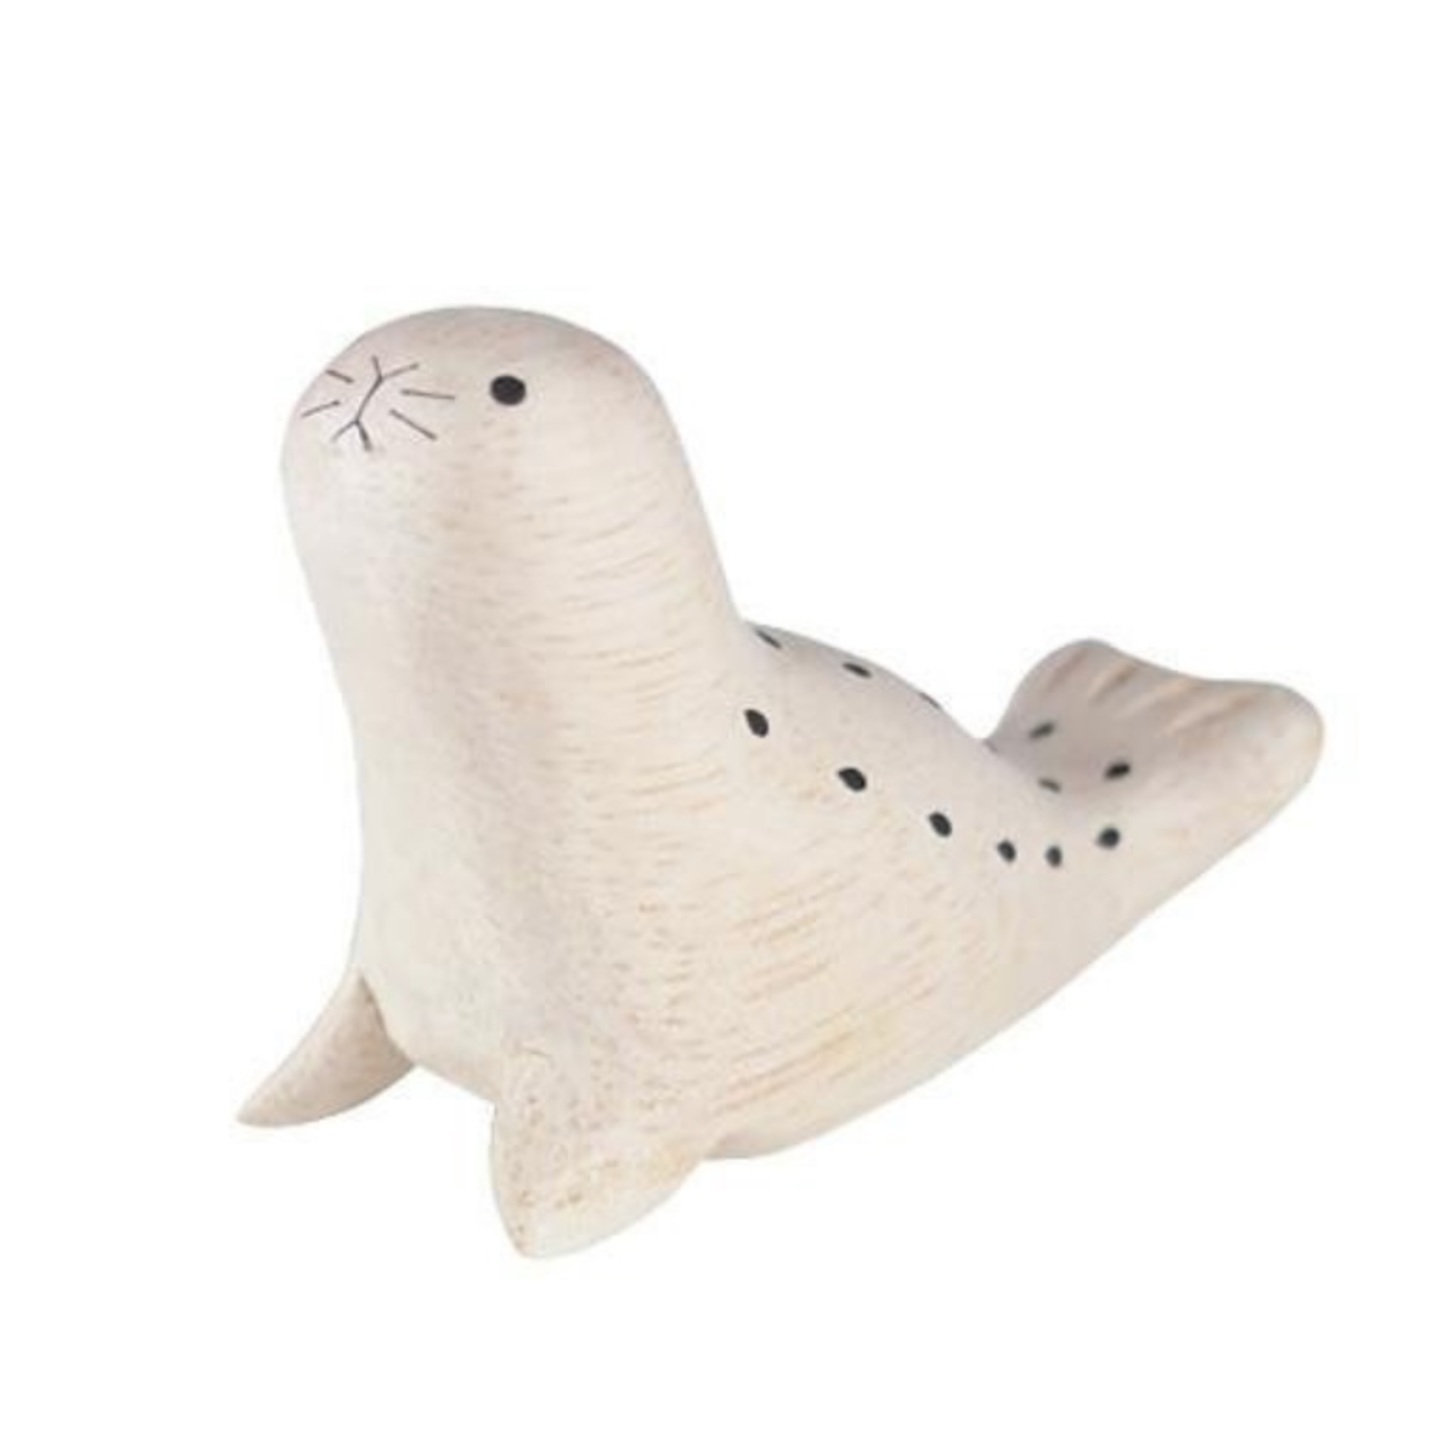 Polepole Seal